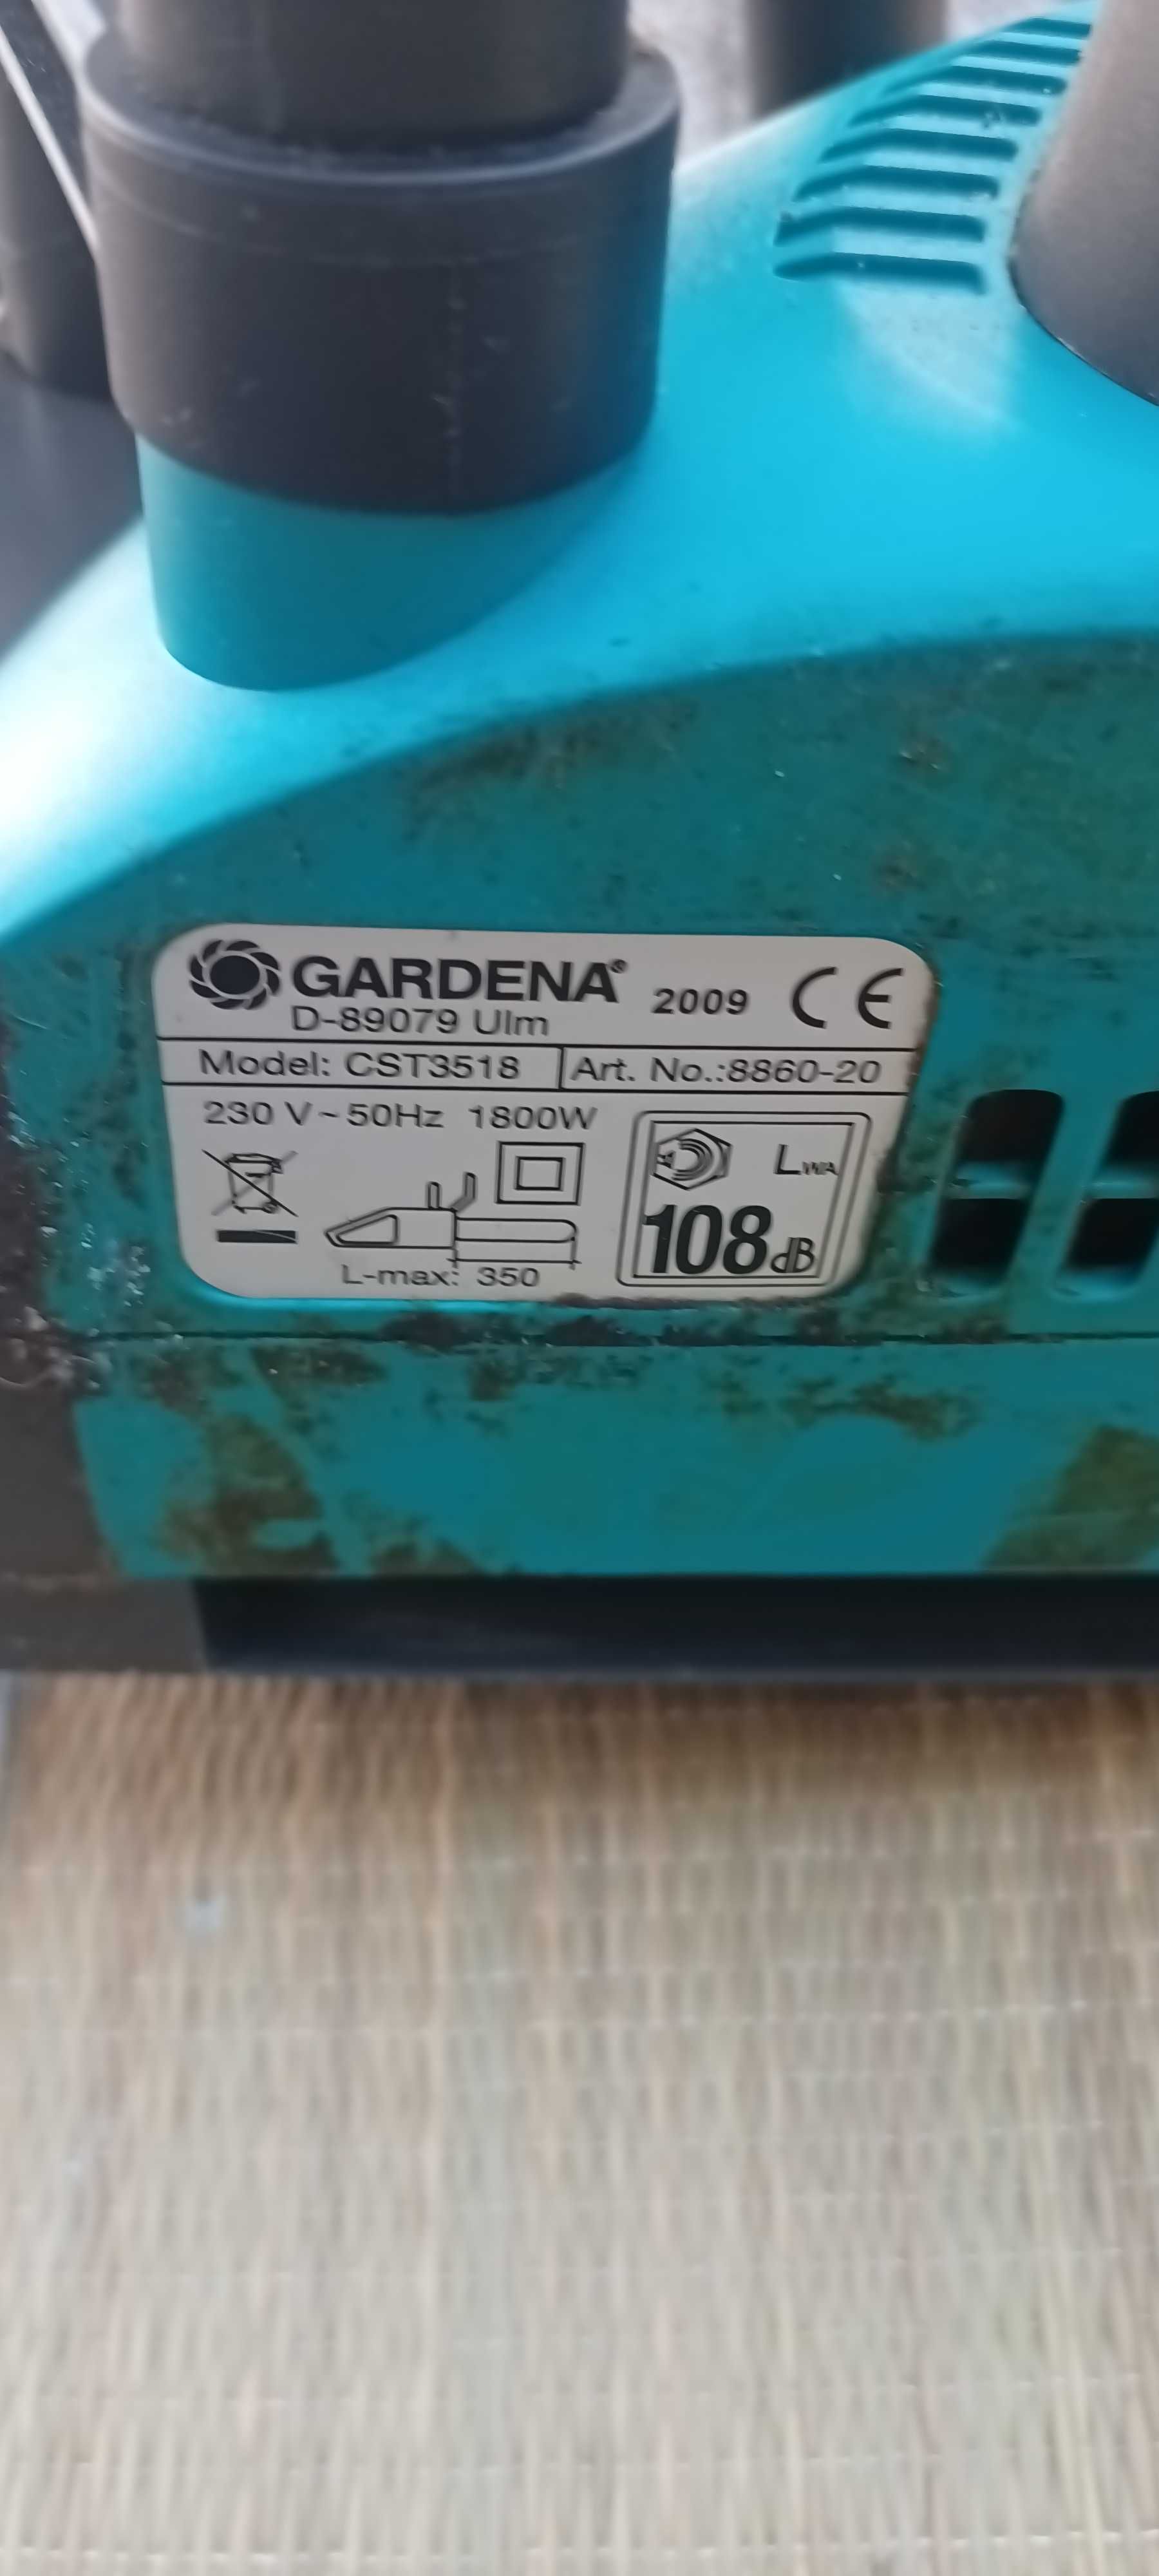 Piła elektryczna Gardena CST3518 moc 1800W super stan.